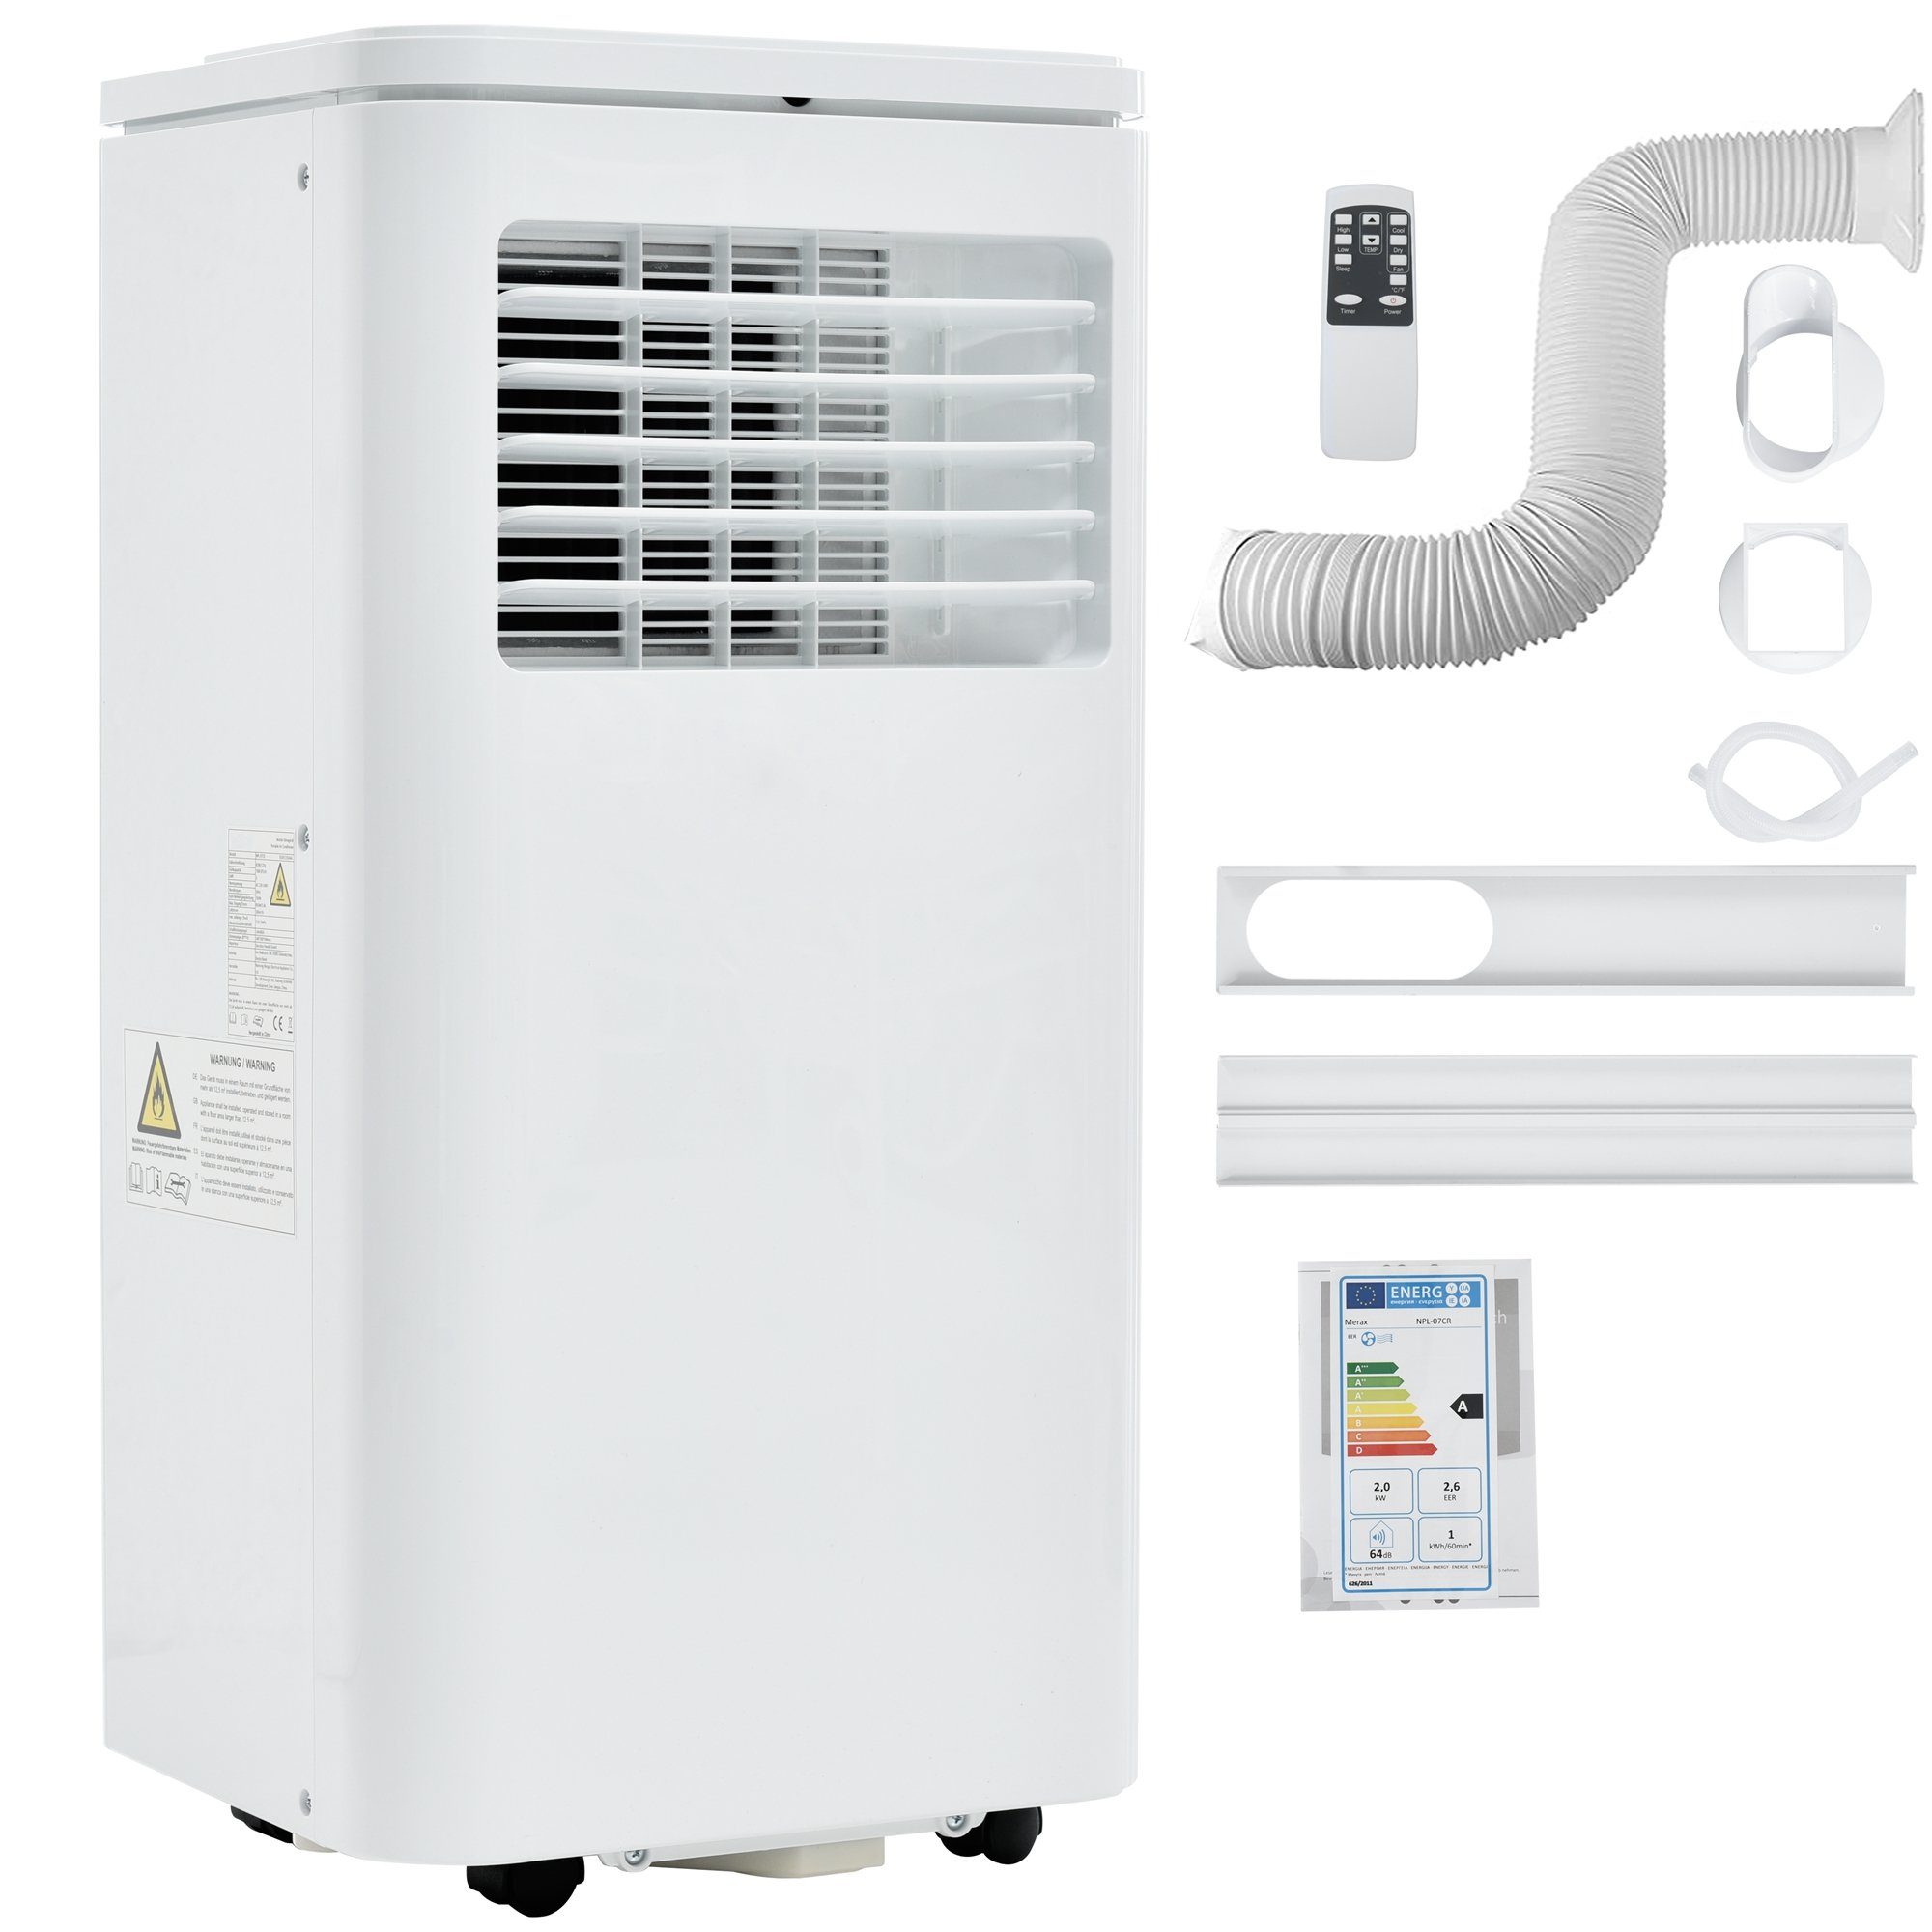 Fangqi Standventilator Mobile Klimaanlage für und 100m³,Luftentfeuchter,24h-Timer, mit Ventilationsfunktion weiß Abluftfunktion, bis Räume